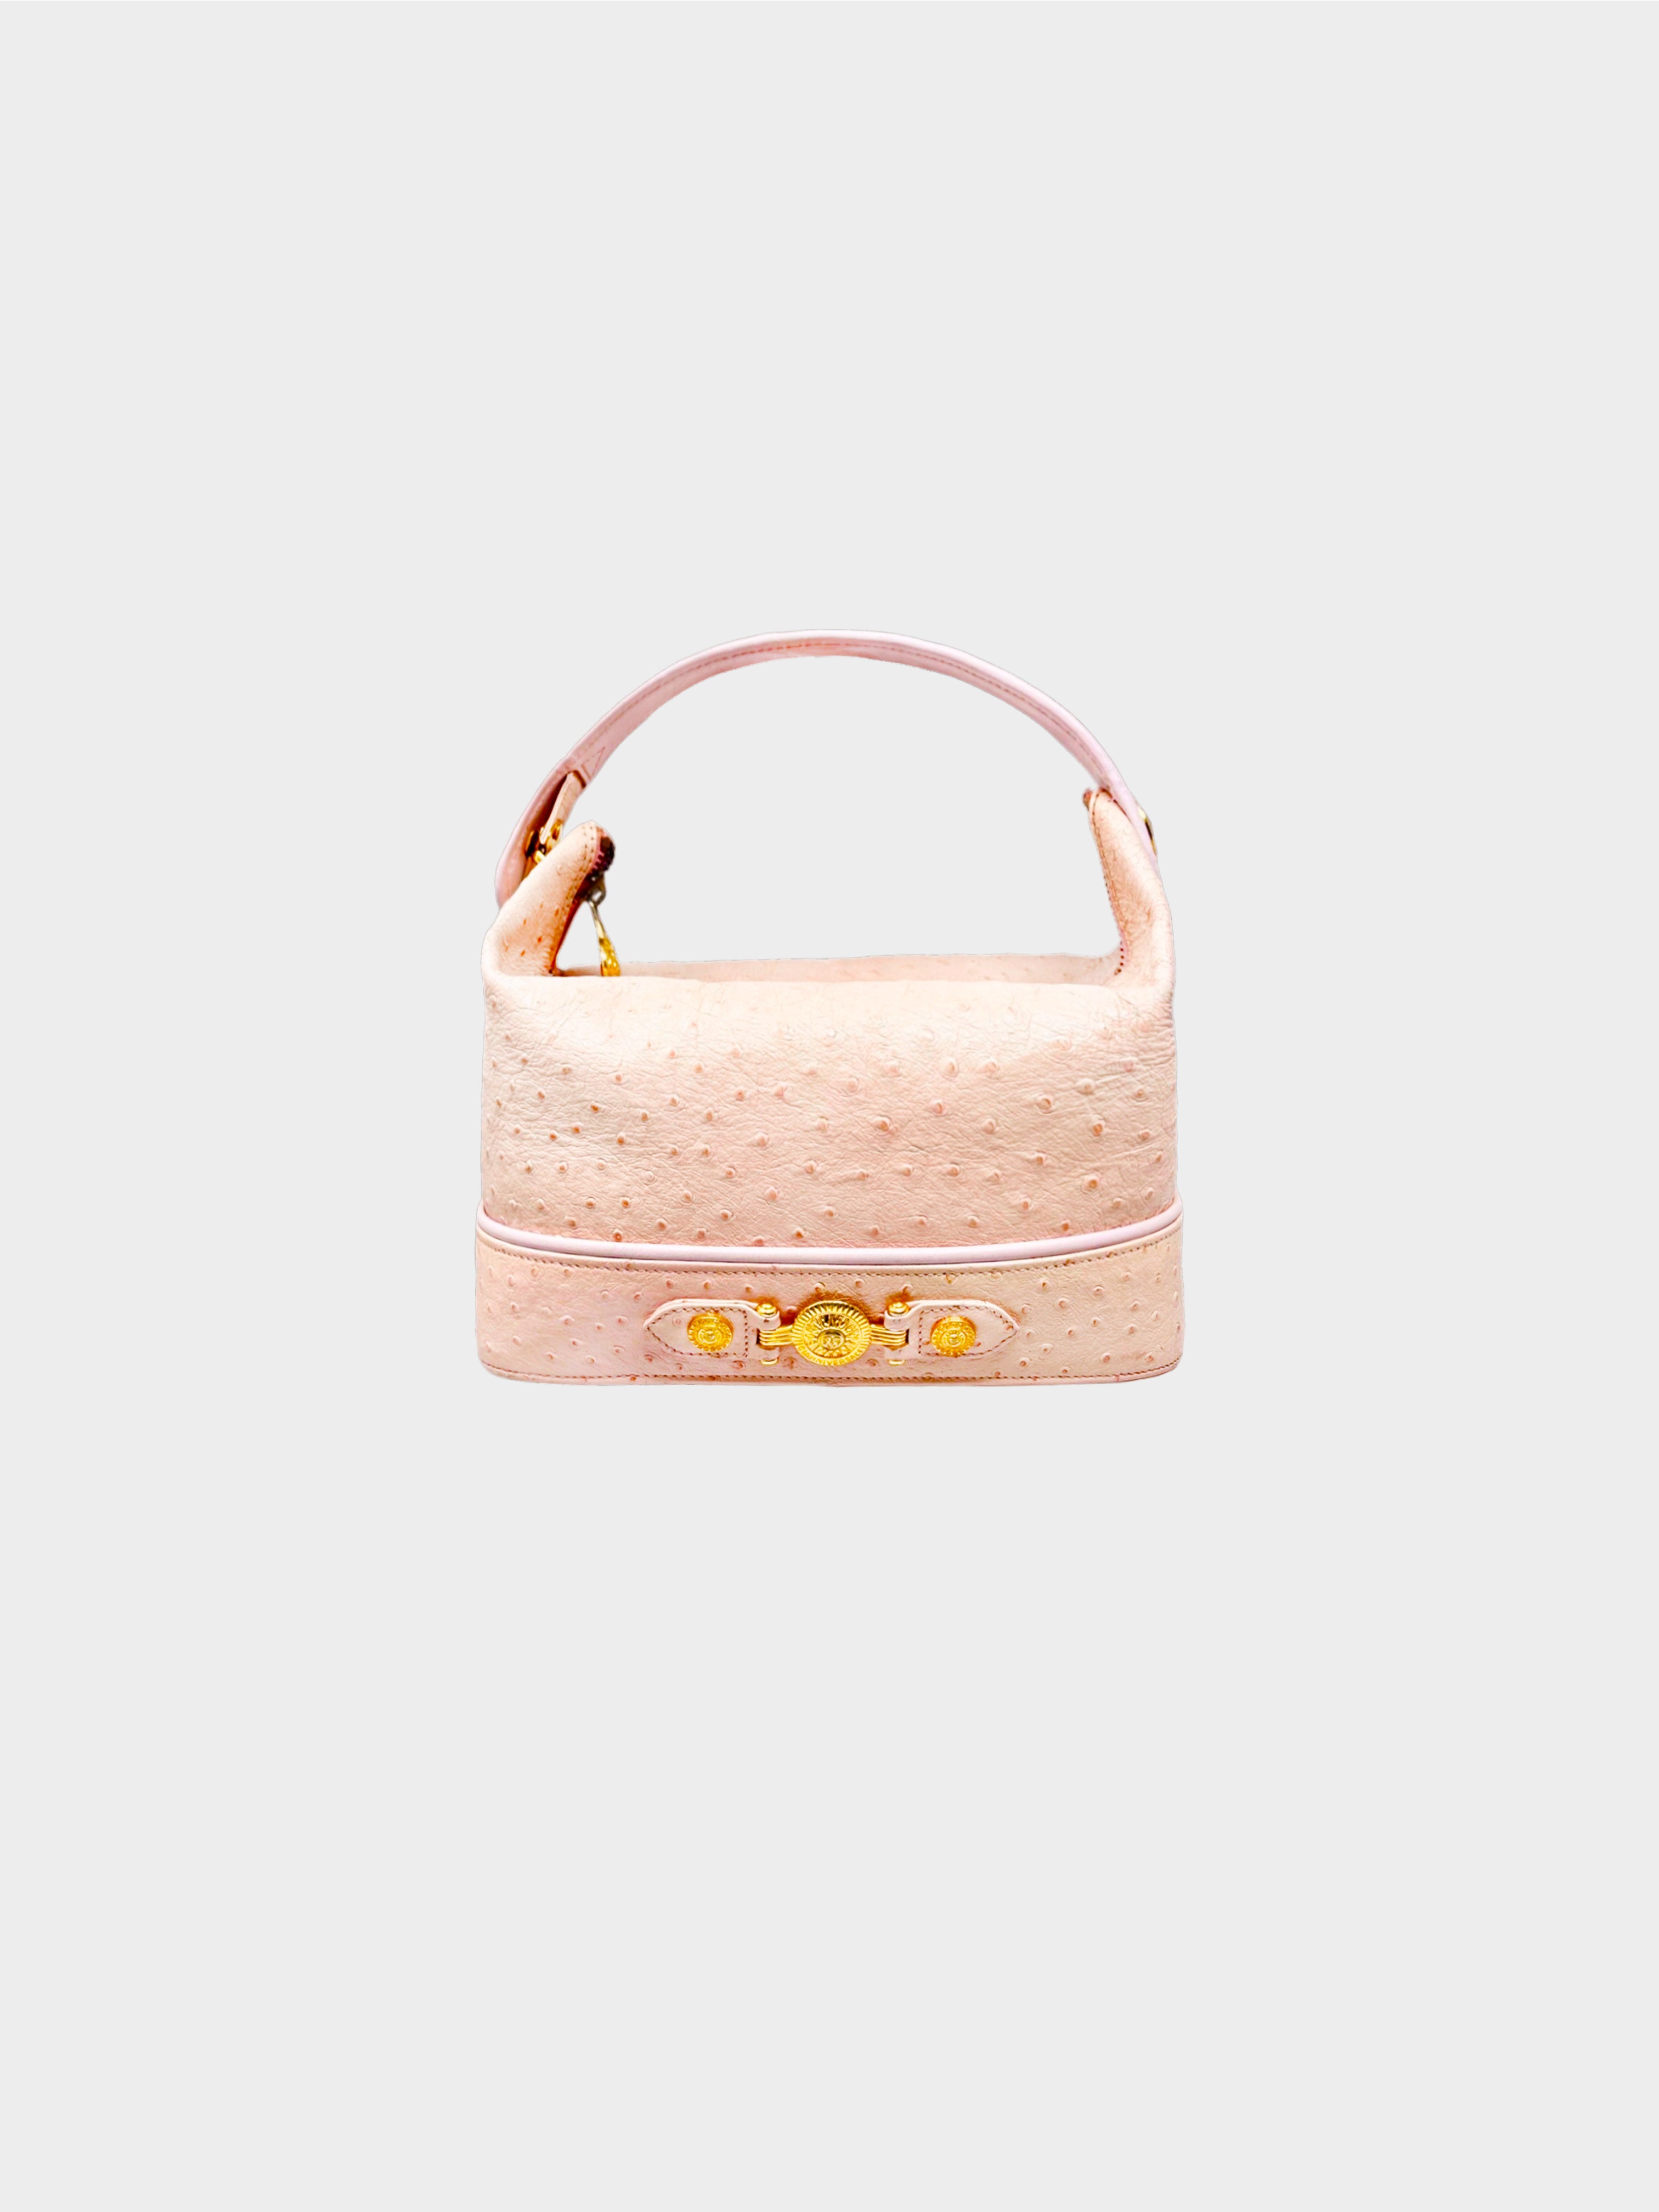 Chanel Clear & Gold Acetate Rhinestone Interlocking CC Pearl Floral Brooch